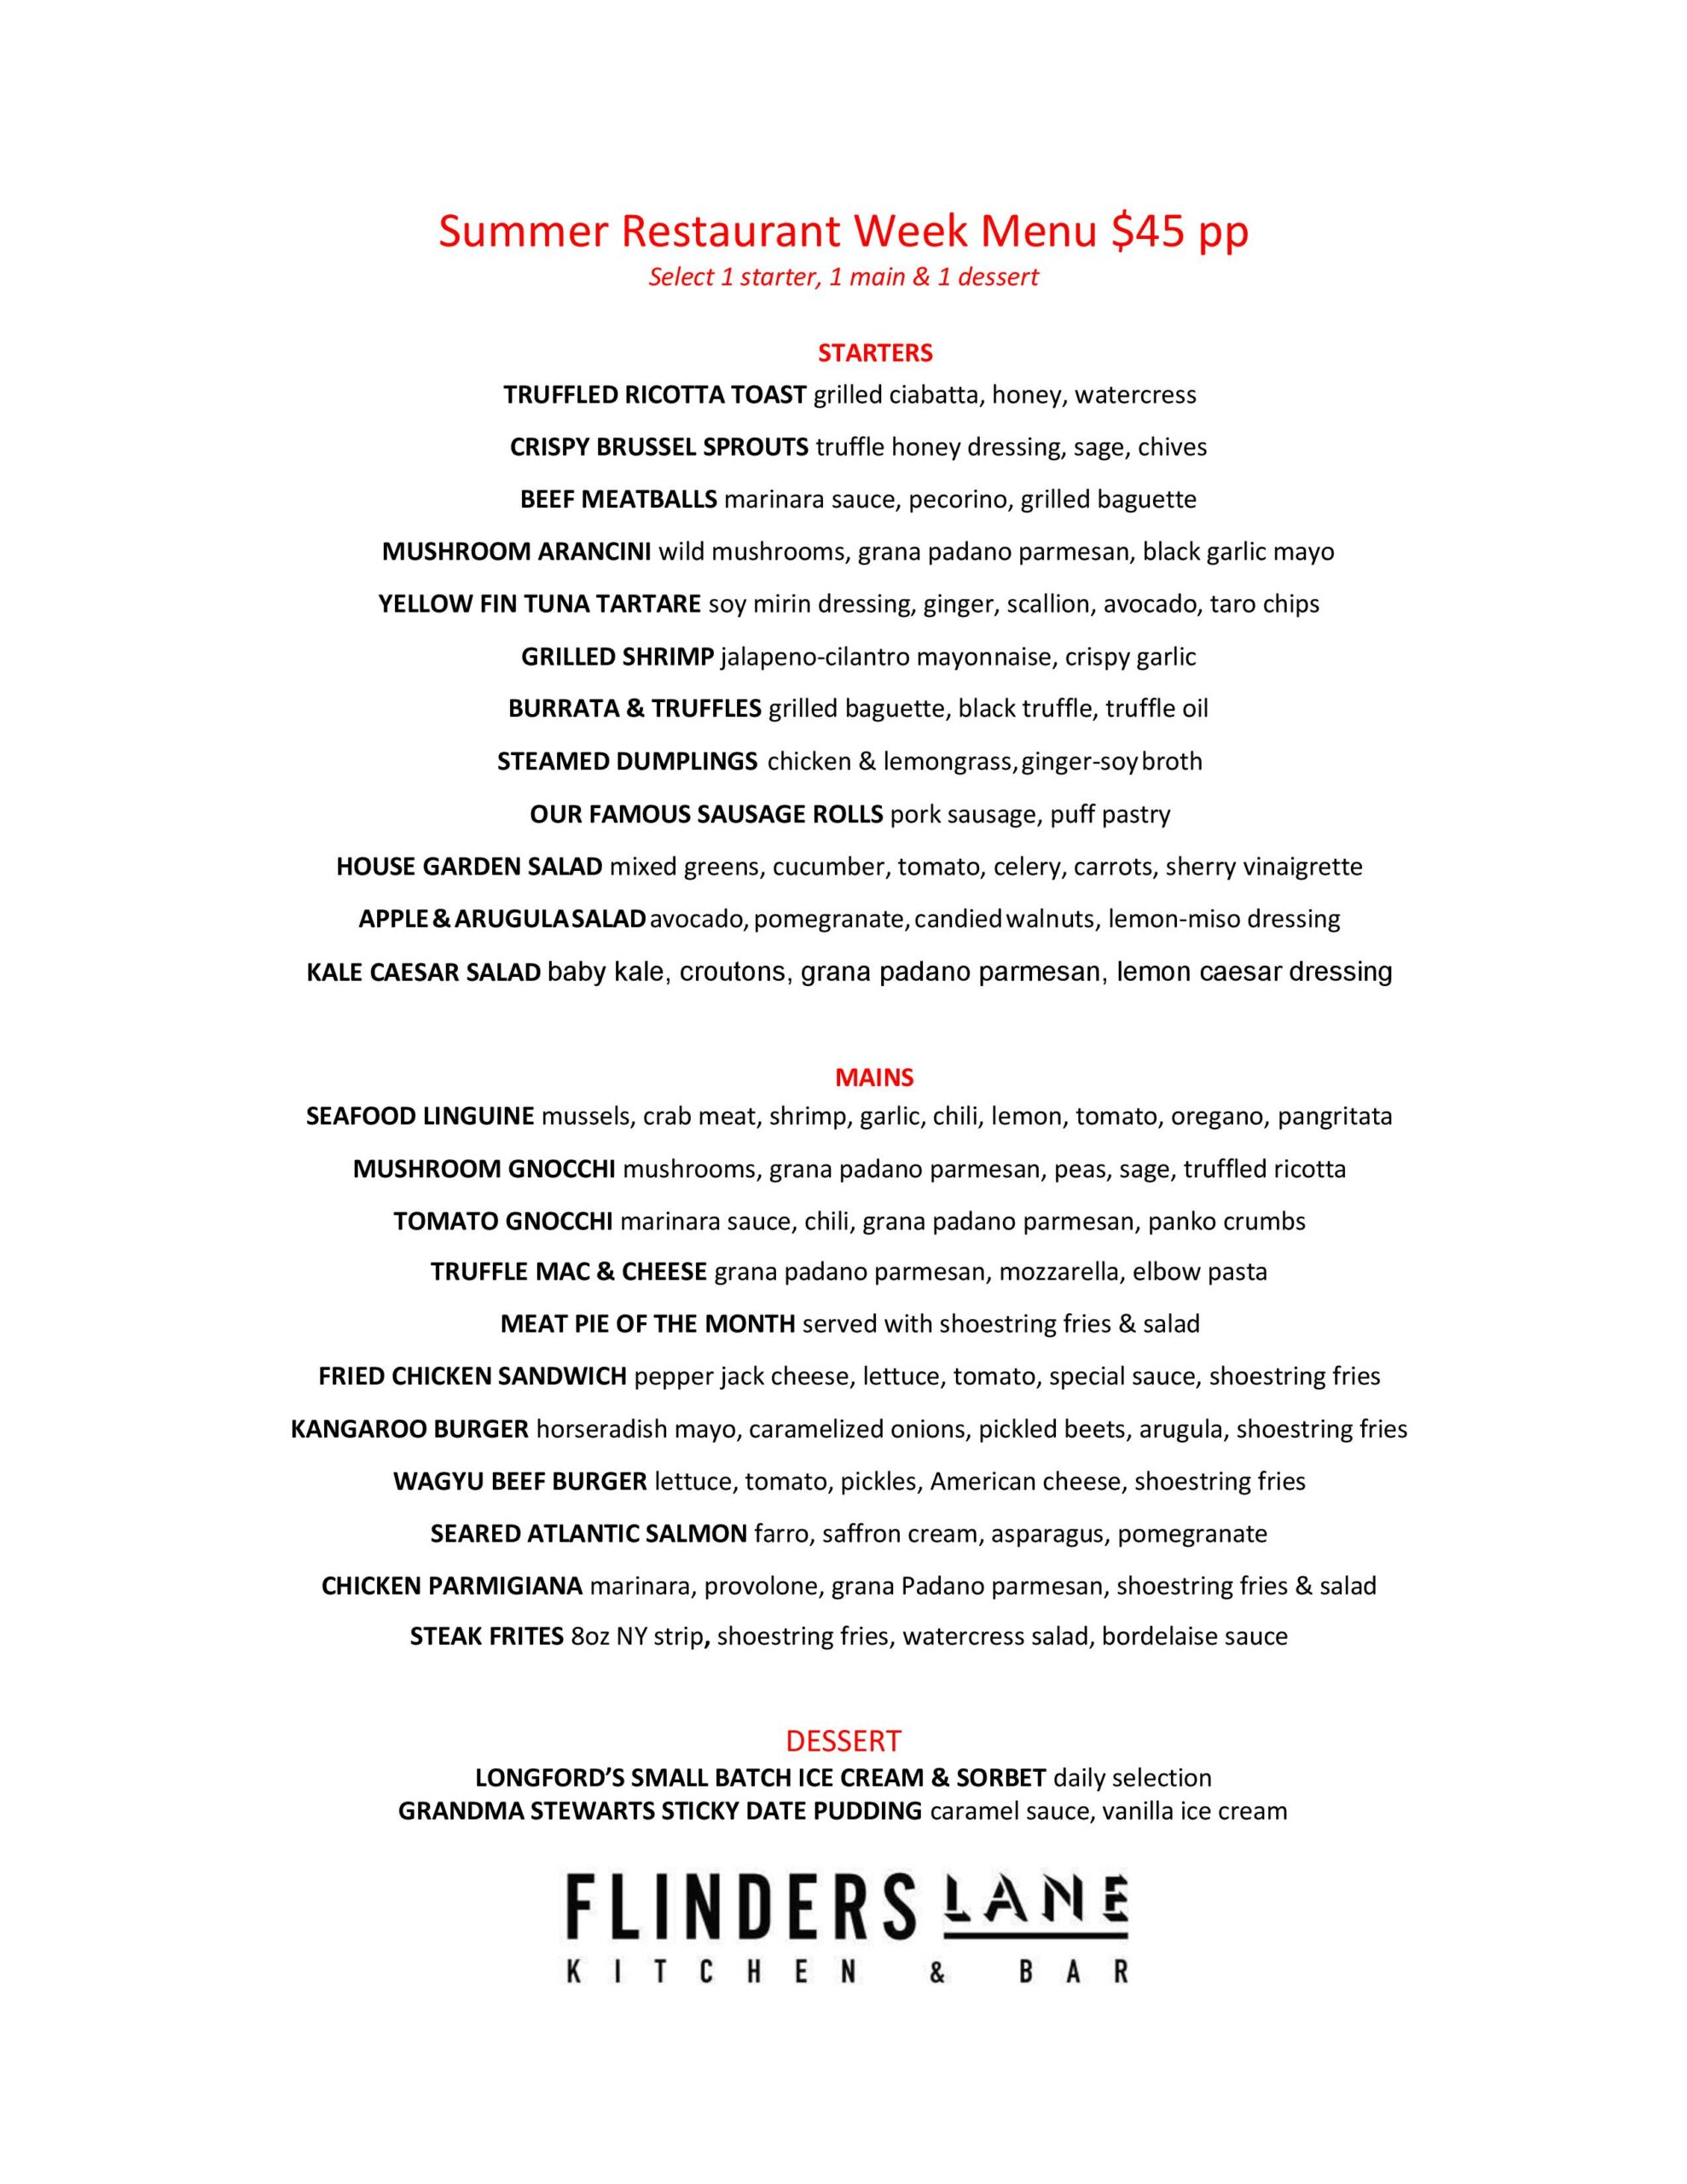 Flinders Lane Stamford Summer Restaurant Week 2022